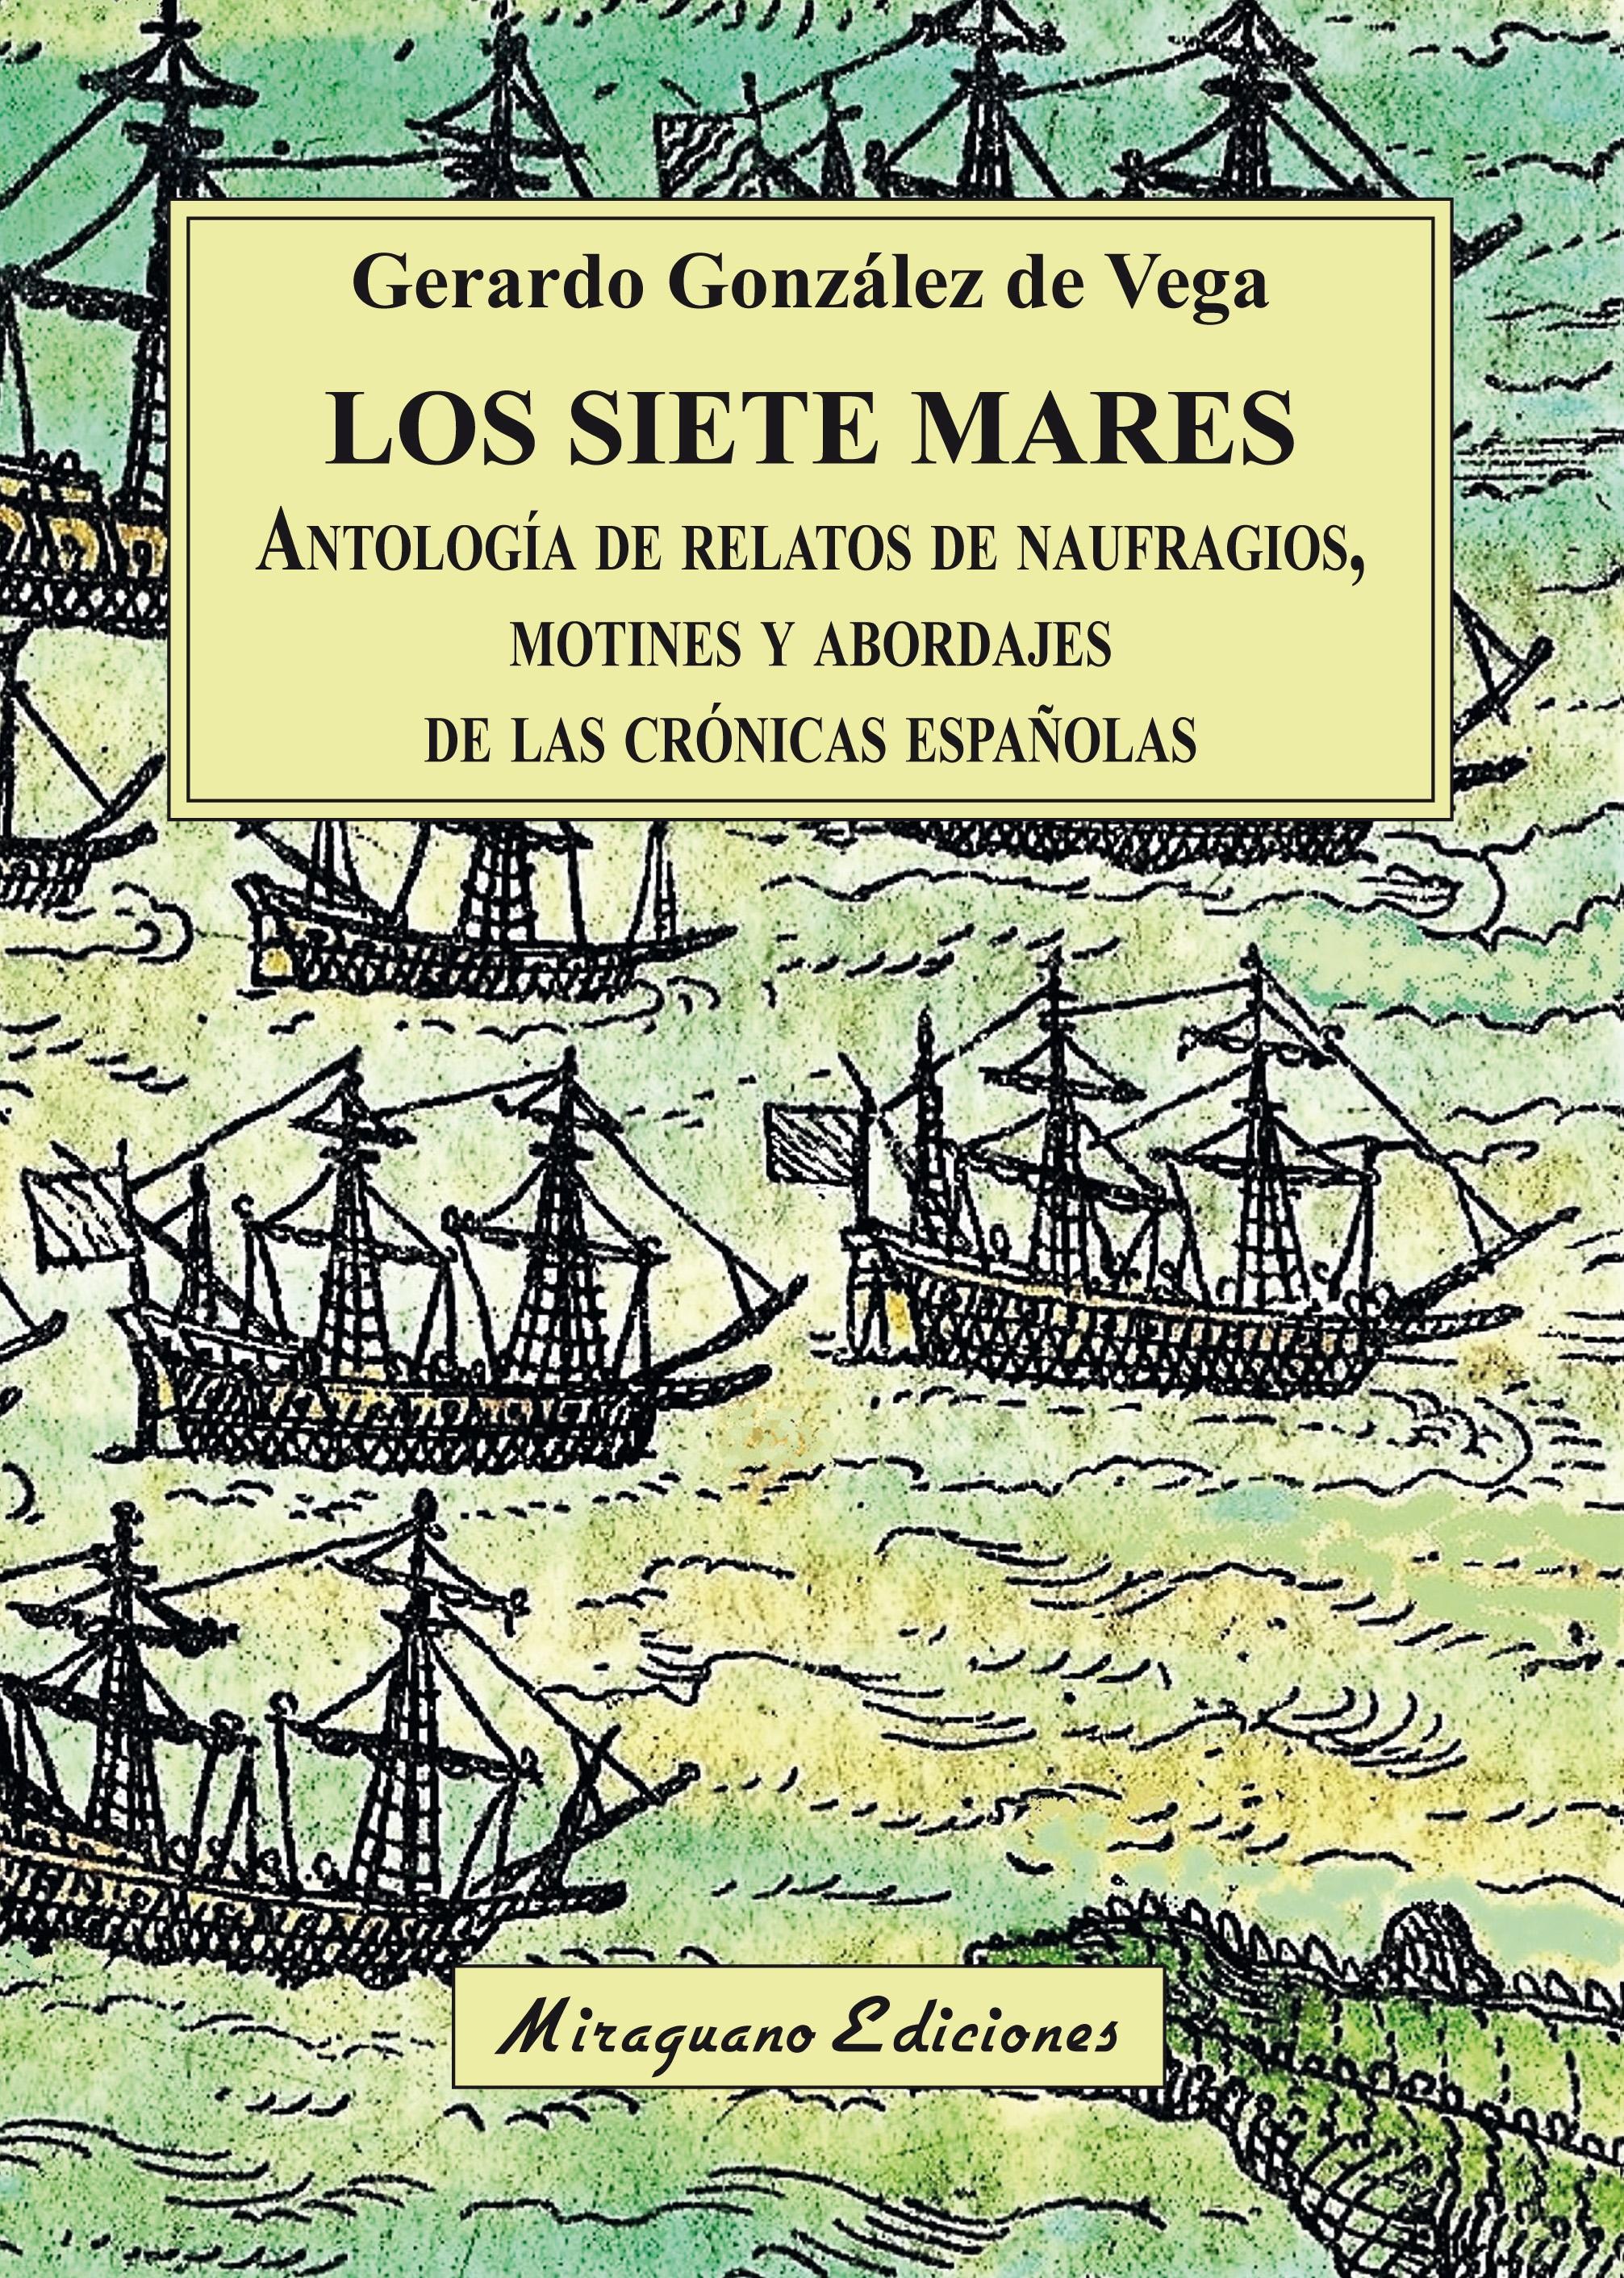 Los siete mares "Antología de relatos de naufragios, motines y abordajes de las crónicas españolas". 